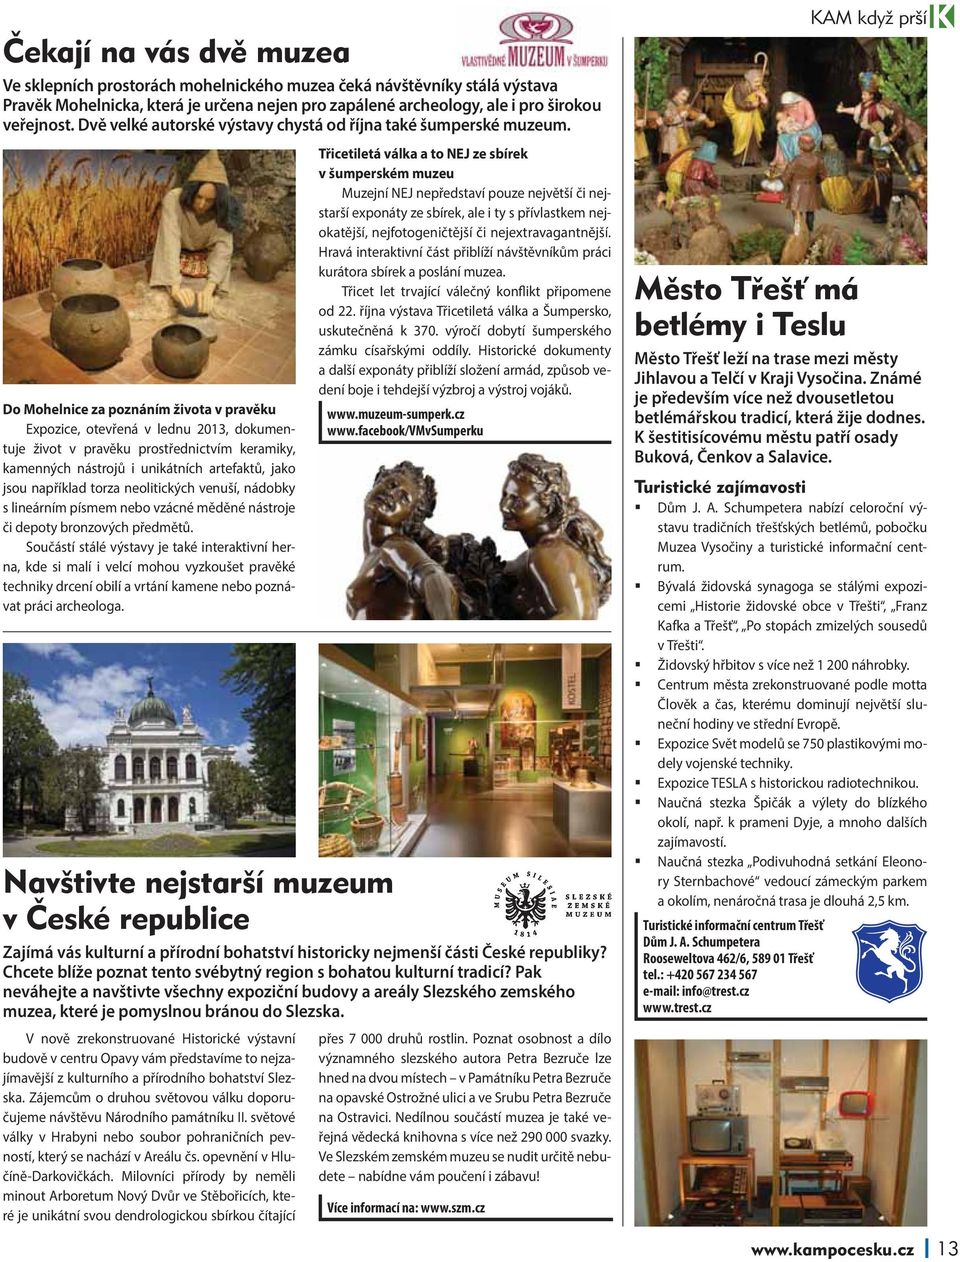 Do Mohelnice za poznáním života v pravěku Expozice, otevřená v lednu 2013, dokumentuje život v pravěku prostřednictvím keramiky, kamenných nástrojů i unikátních artefaktů, jako jsou například torza